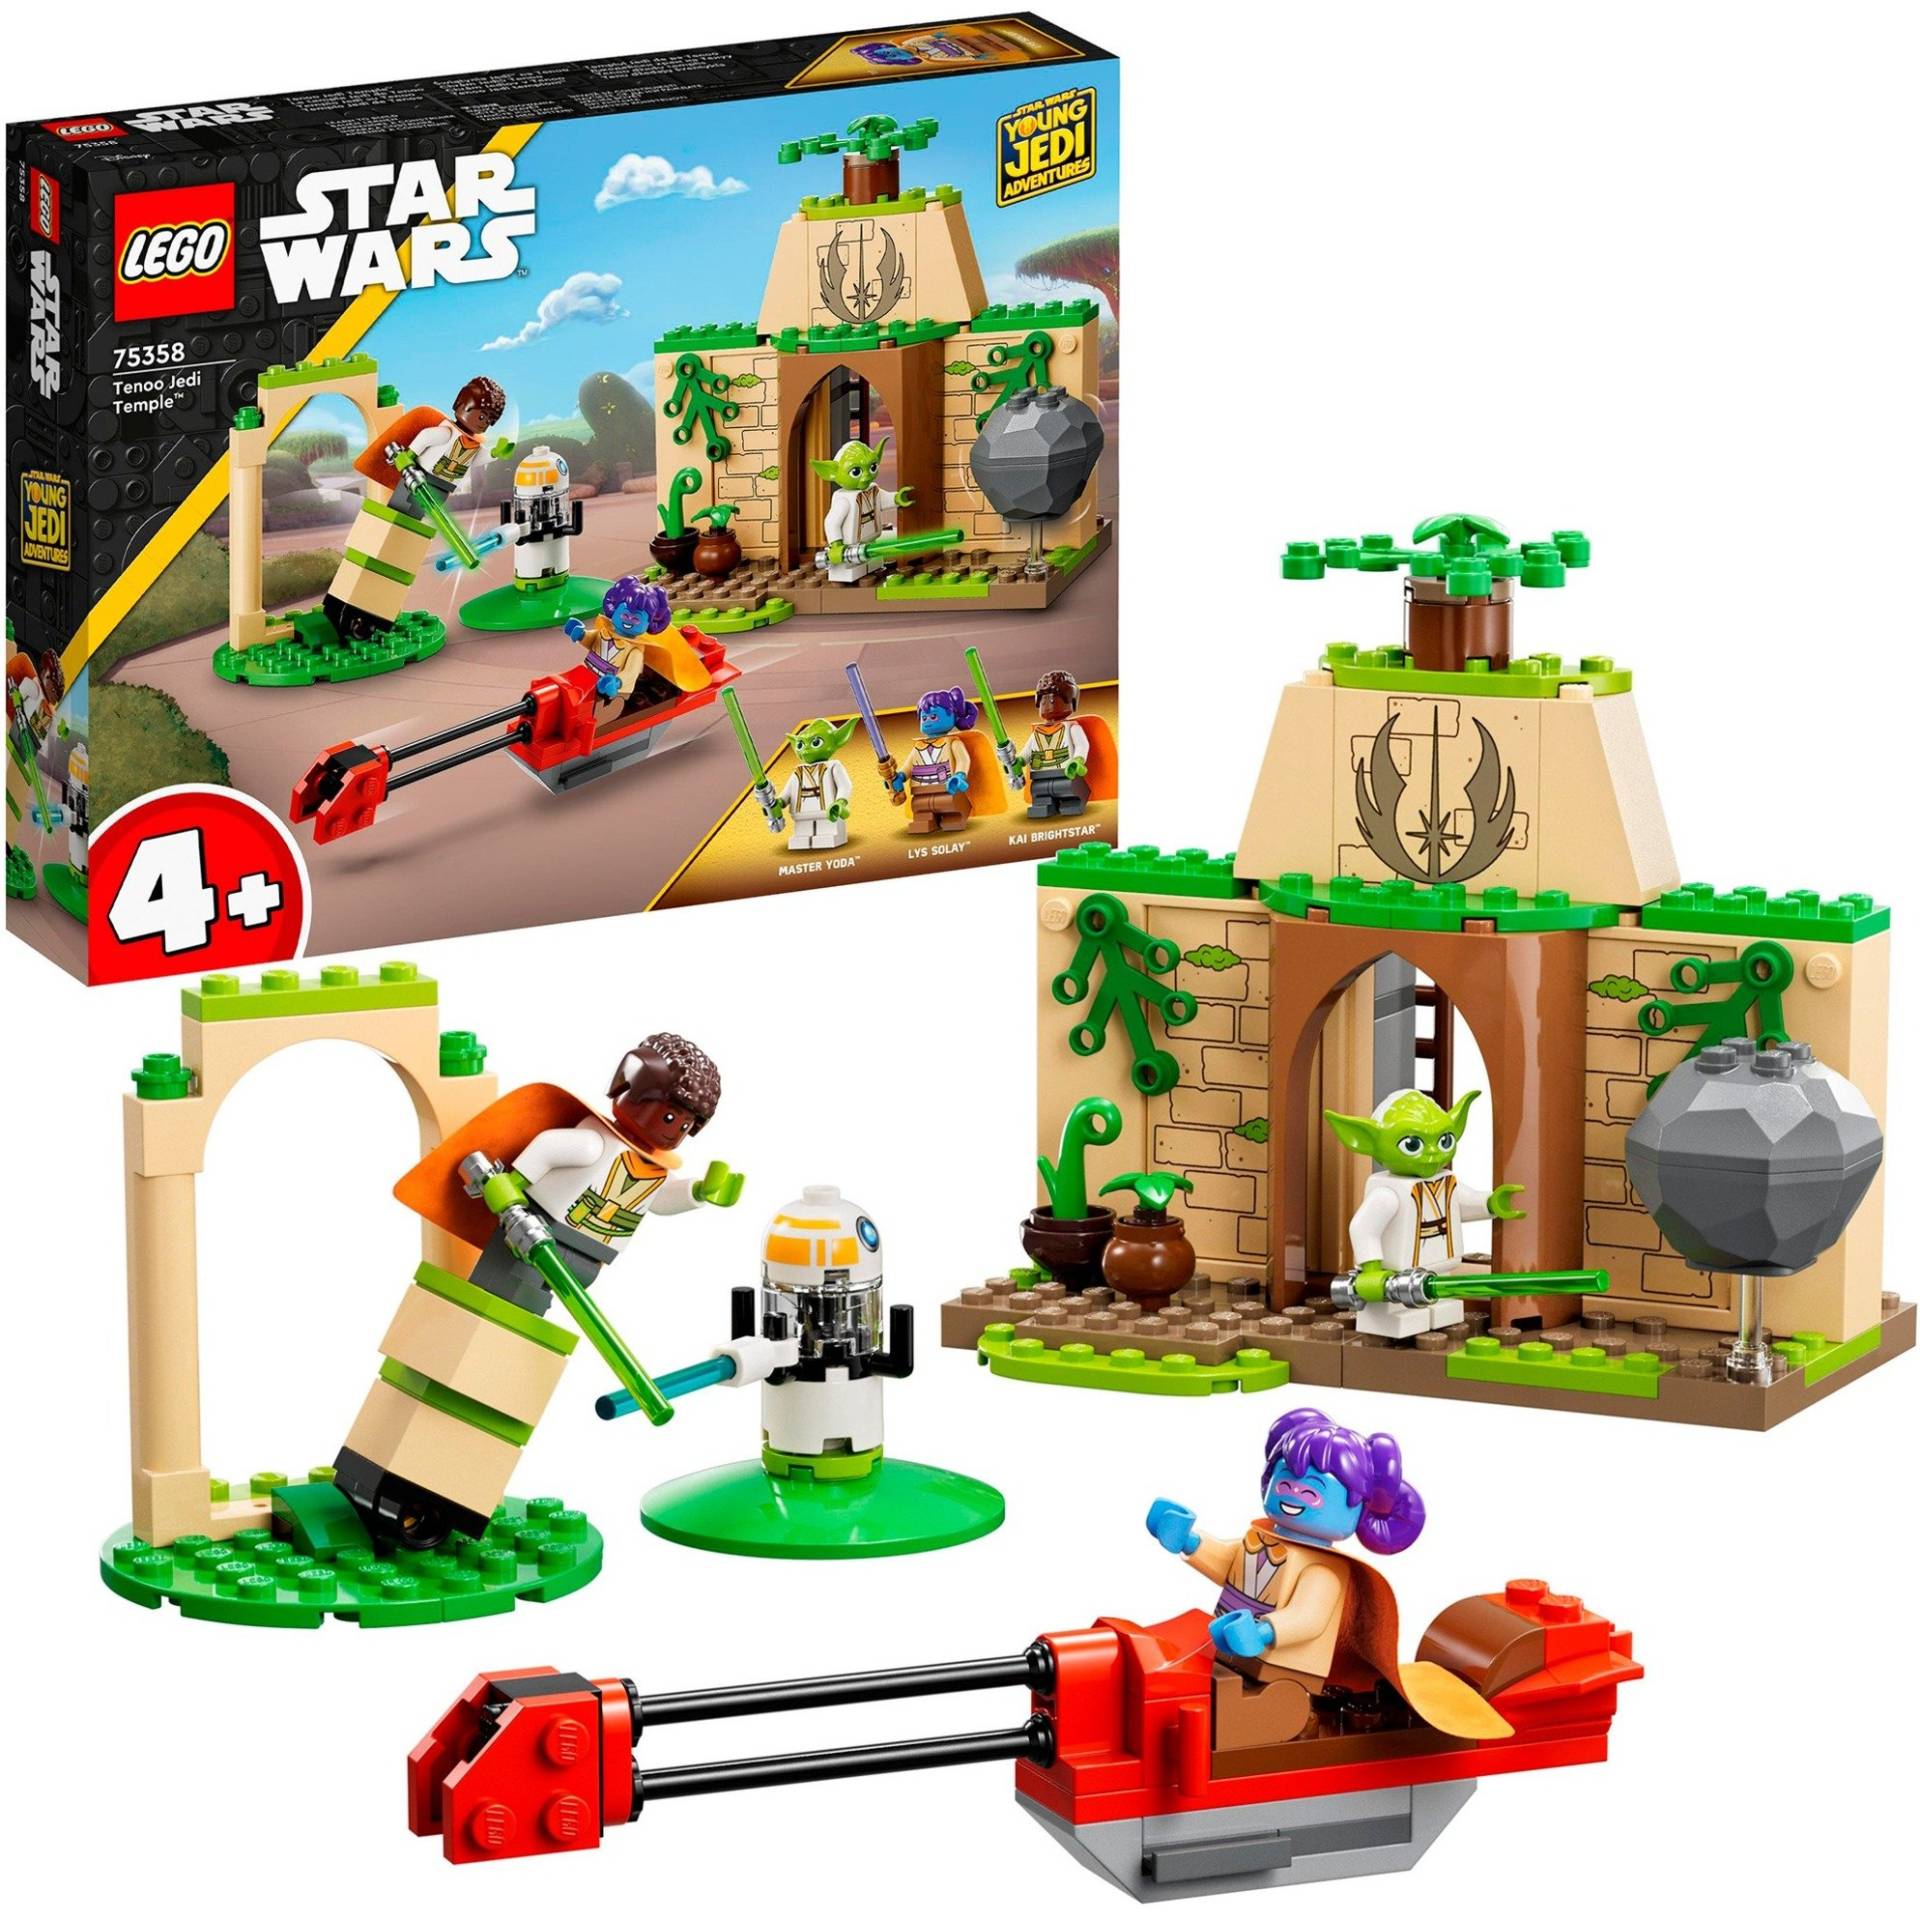 75358 Star Wars Tenno Jedi Temple, Konstruktionsspielzeug von Lego